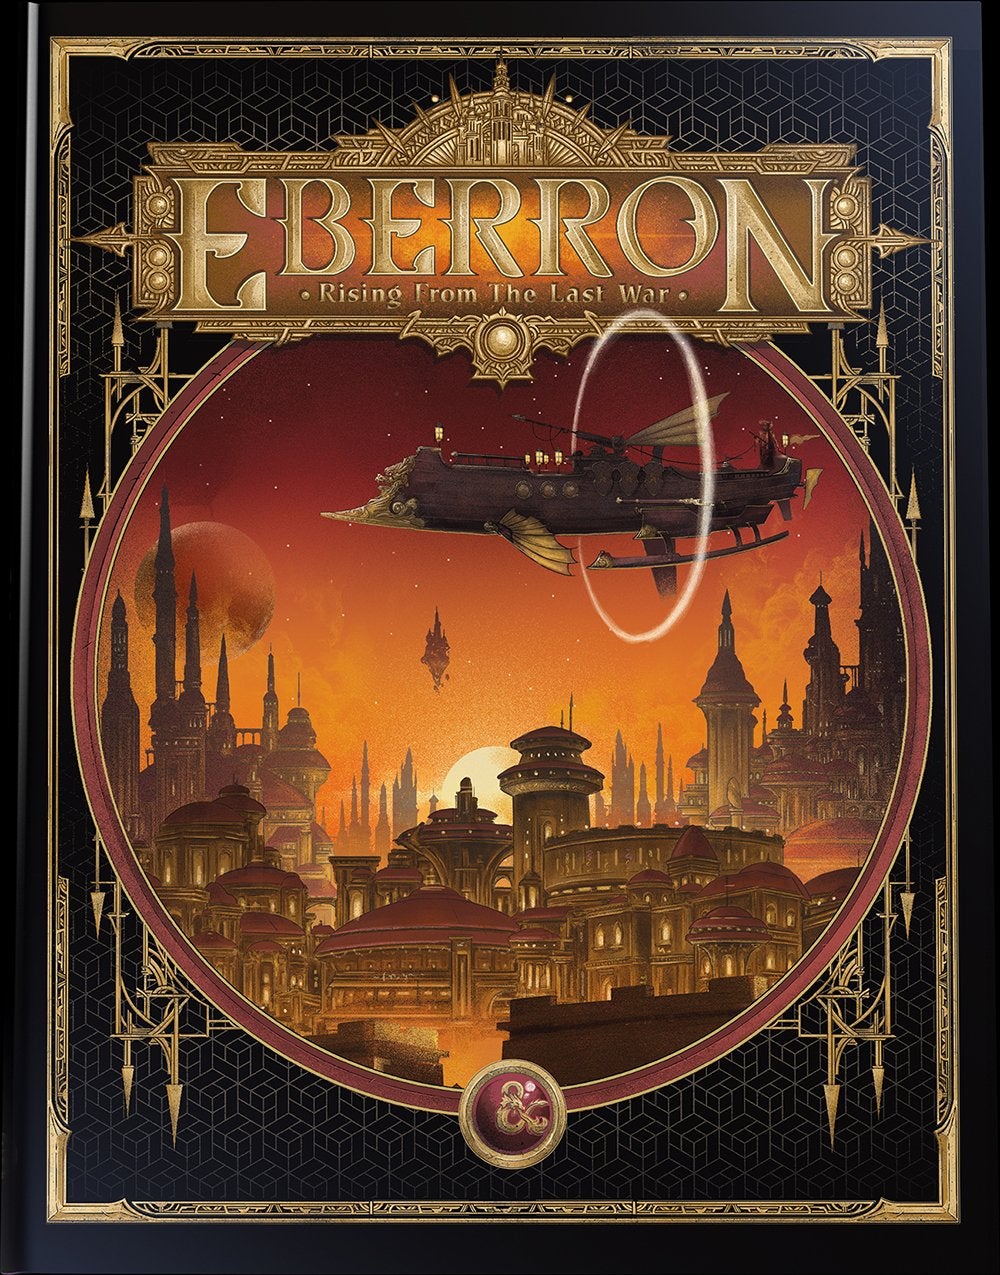 Eberron: Rising from the Last War - Alternate Cover